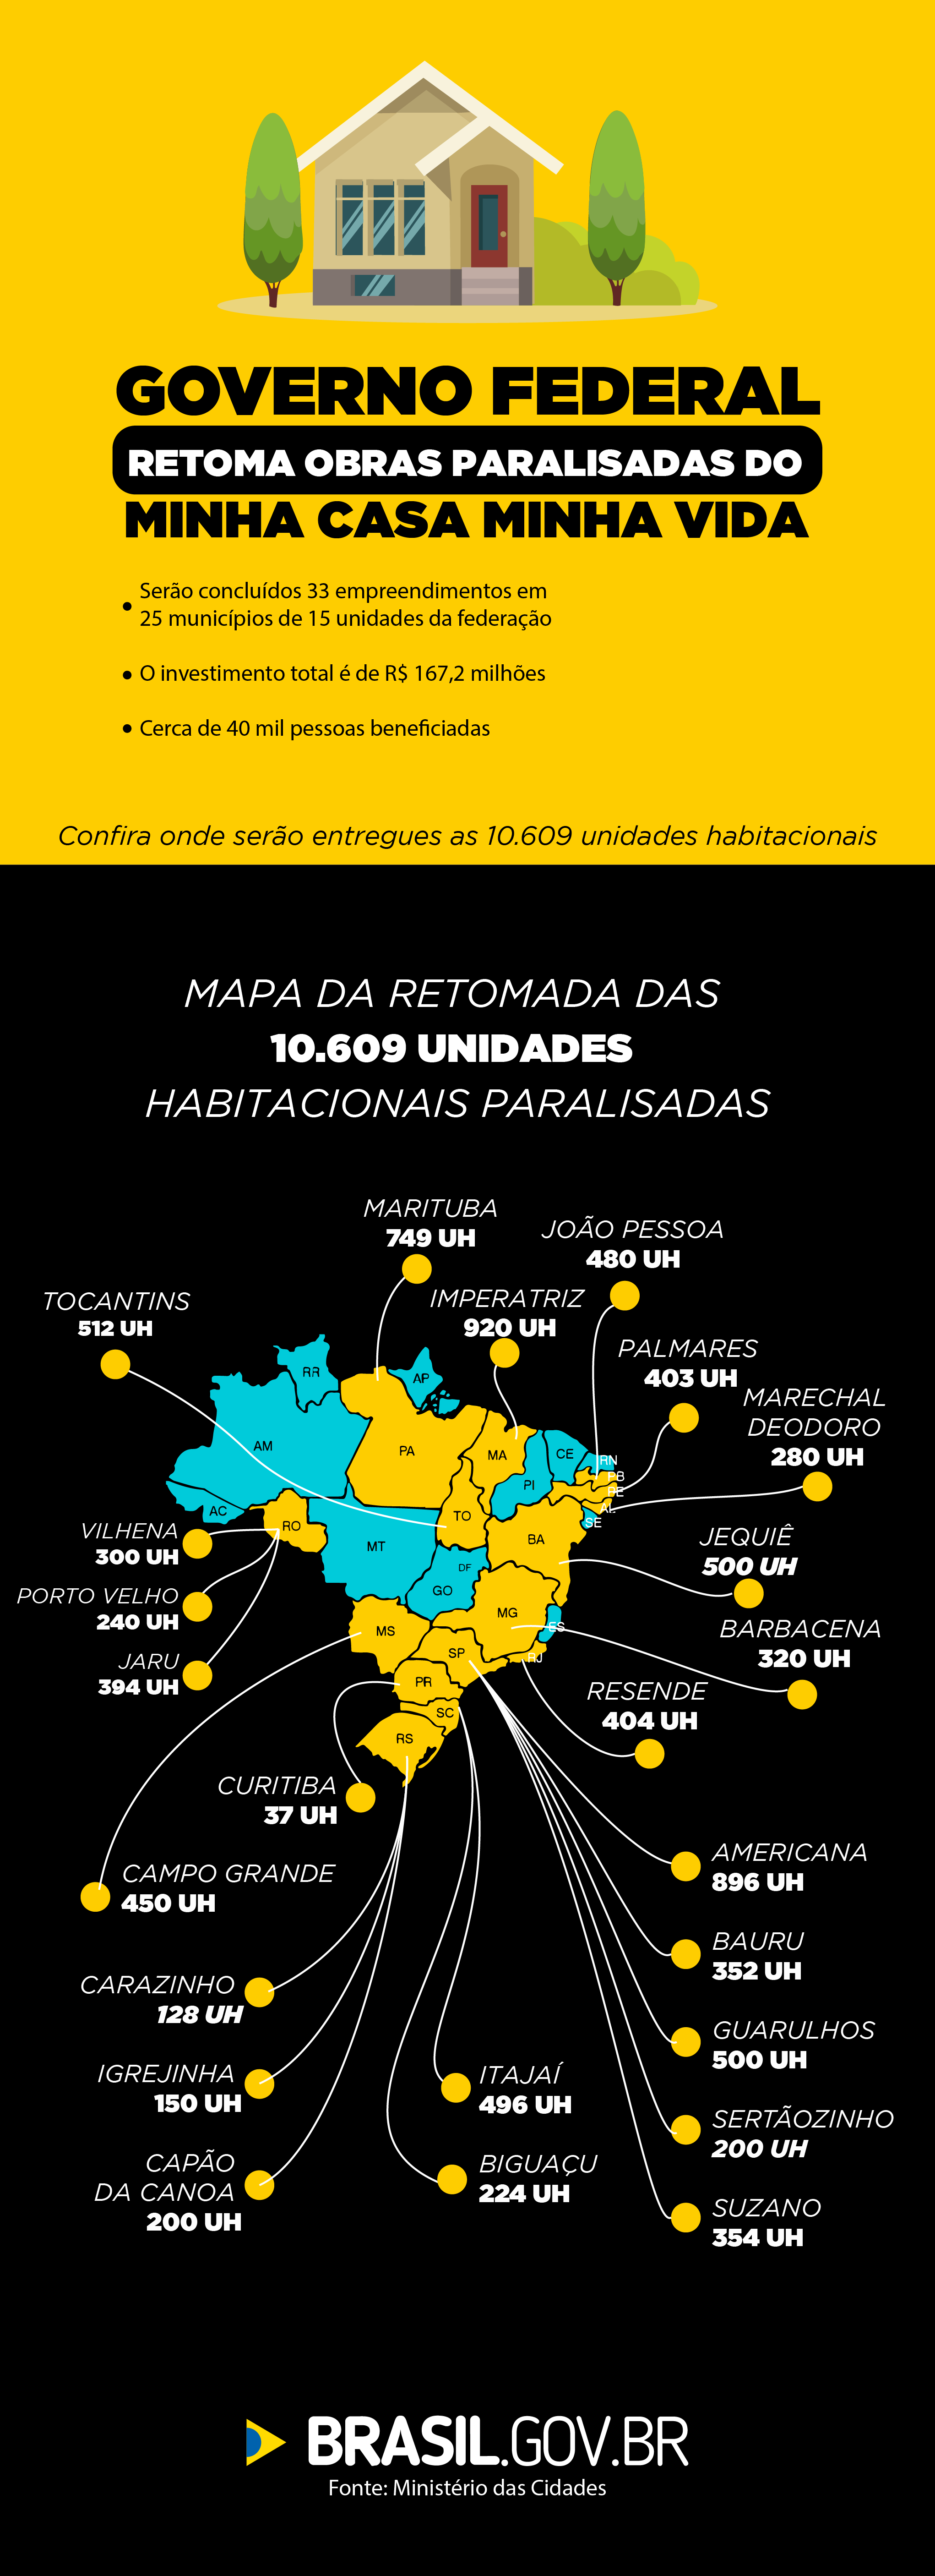 Investimento para a conclusão das obras ultrapassa R$ 167 milhões de reais e beneficia 25 municípios em 15 unidades da federação